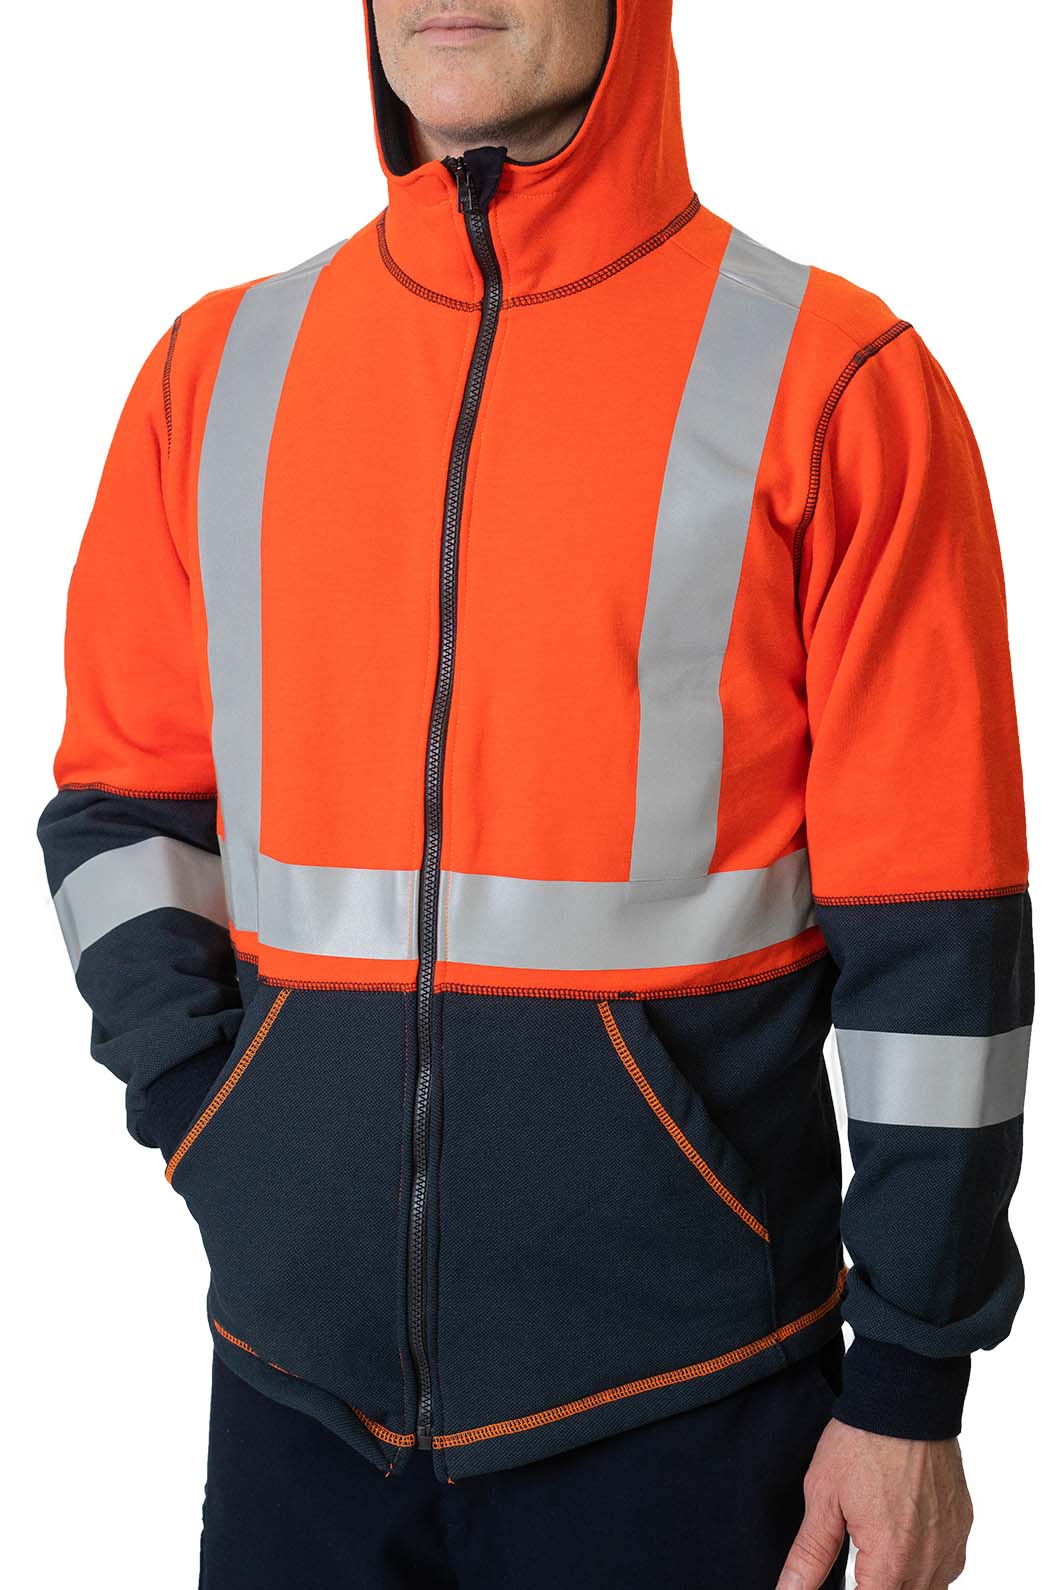 Sightseeing Walter Cunningham nyheder Elements Lightning Jacket | Flame-Resistant Hi-Vis Jacket